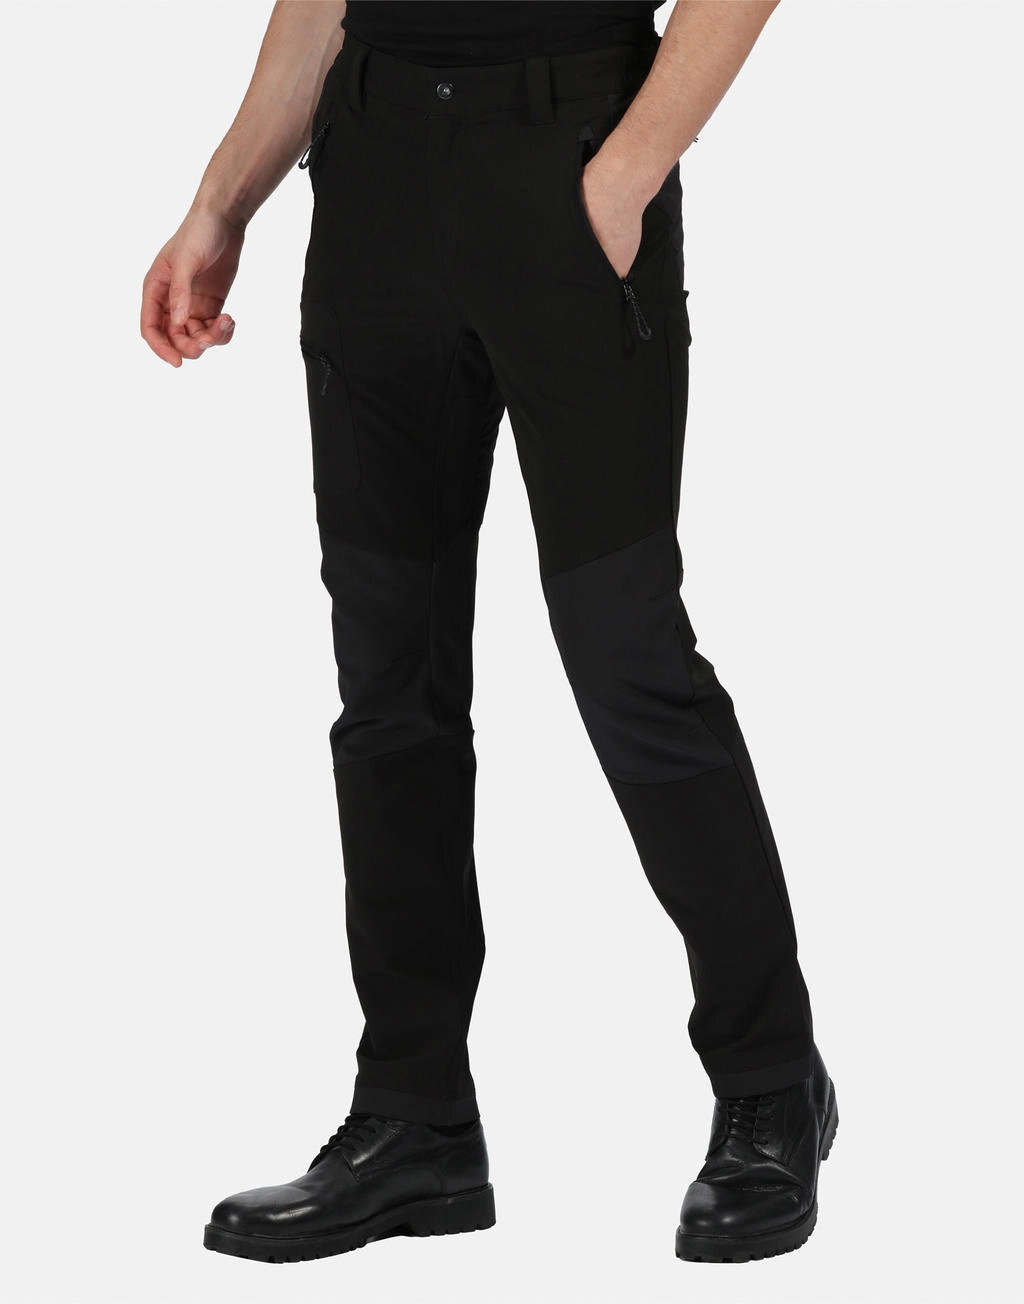 X-Pro Prolite Stretch Trouser (Long) zum Besticken und Bedrucken mit Ihren Logo, Schriftzug oder Motiv.